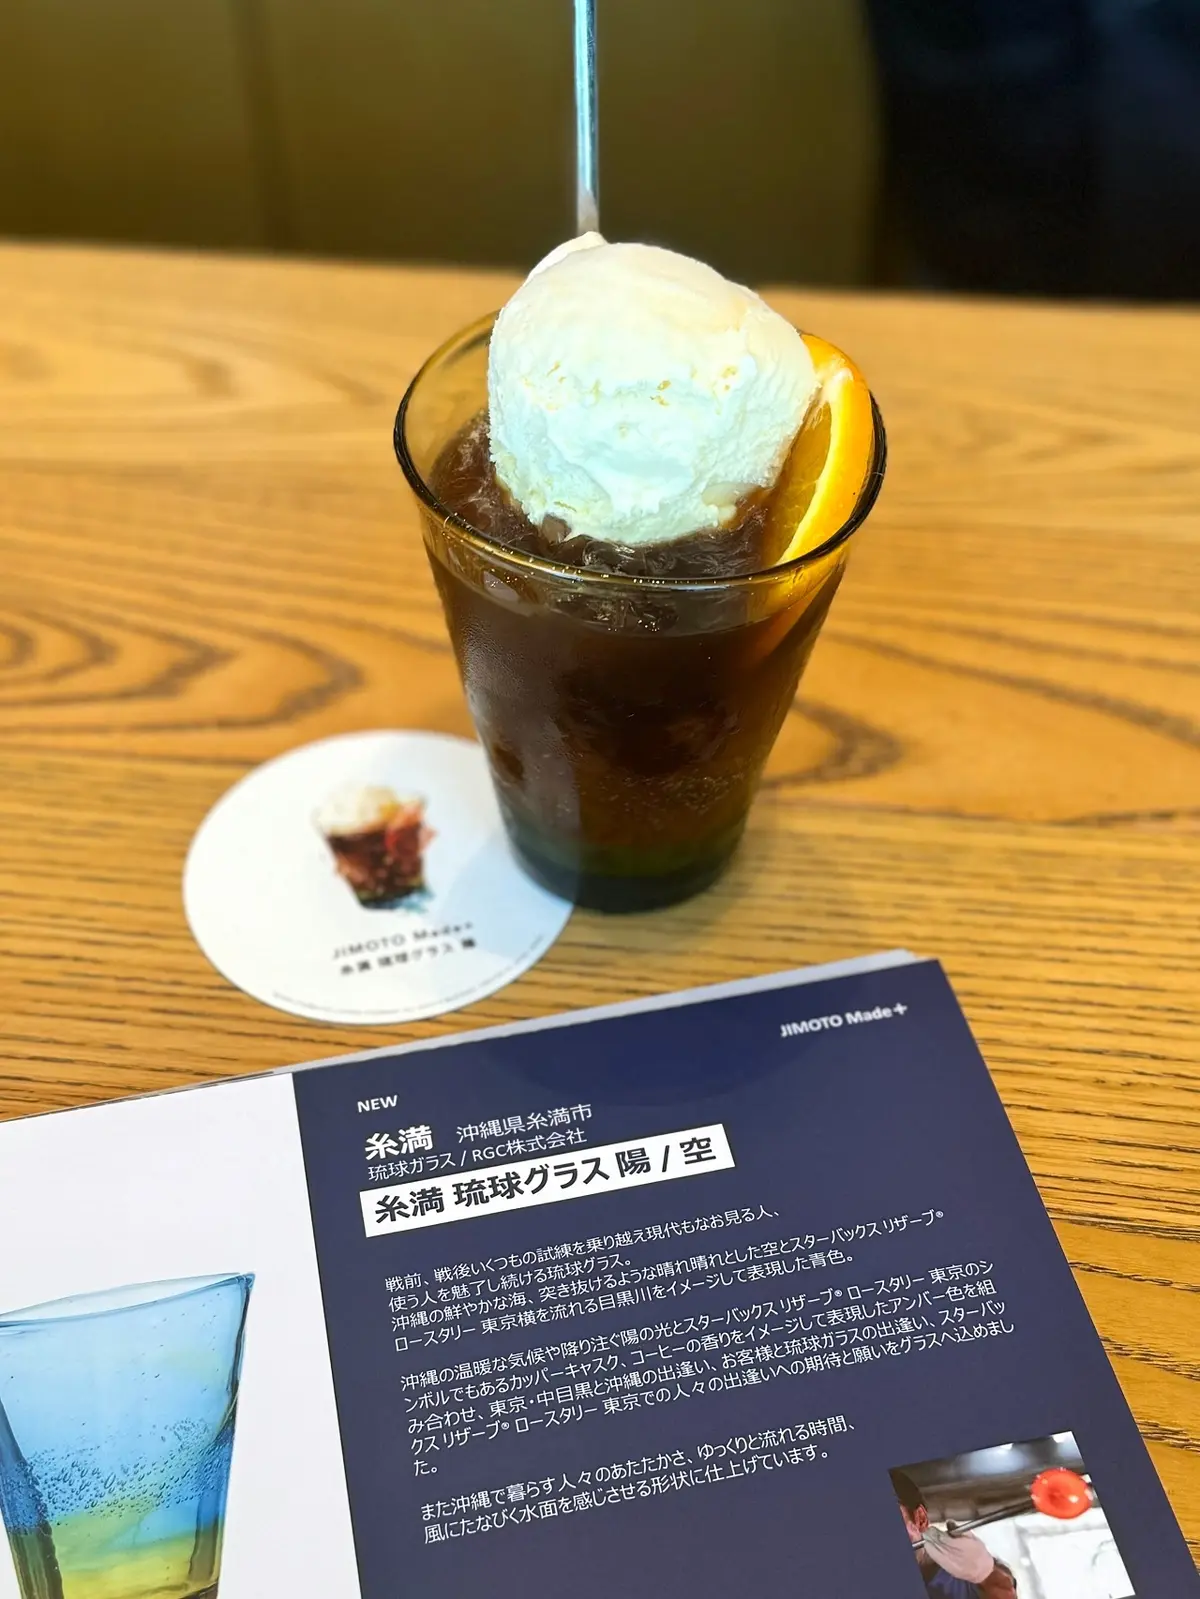 スタバロースタリー東京「JIMOTO Made+ 糸満 琉球グラス」 で楽しむビバレッジ「UTSUWA EXPERIENCE 朝陽のきらめき」